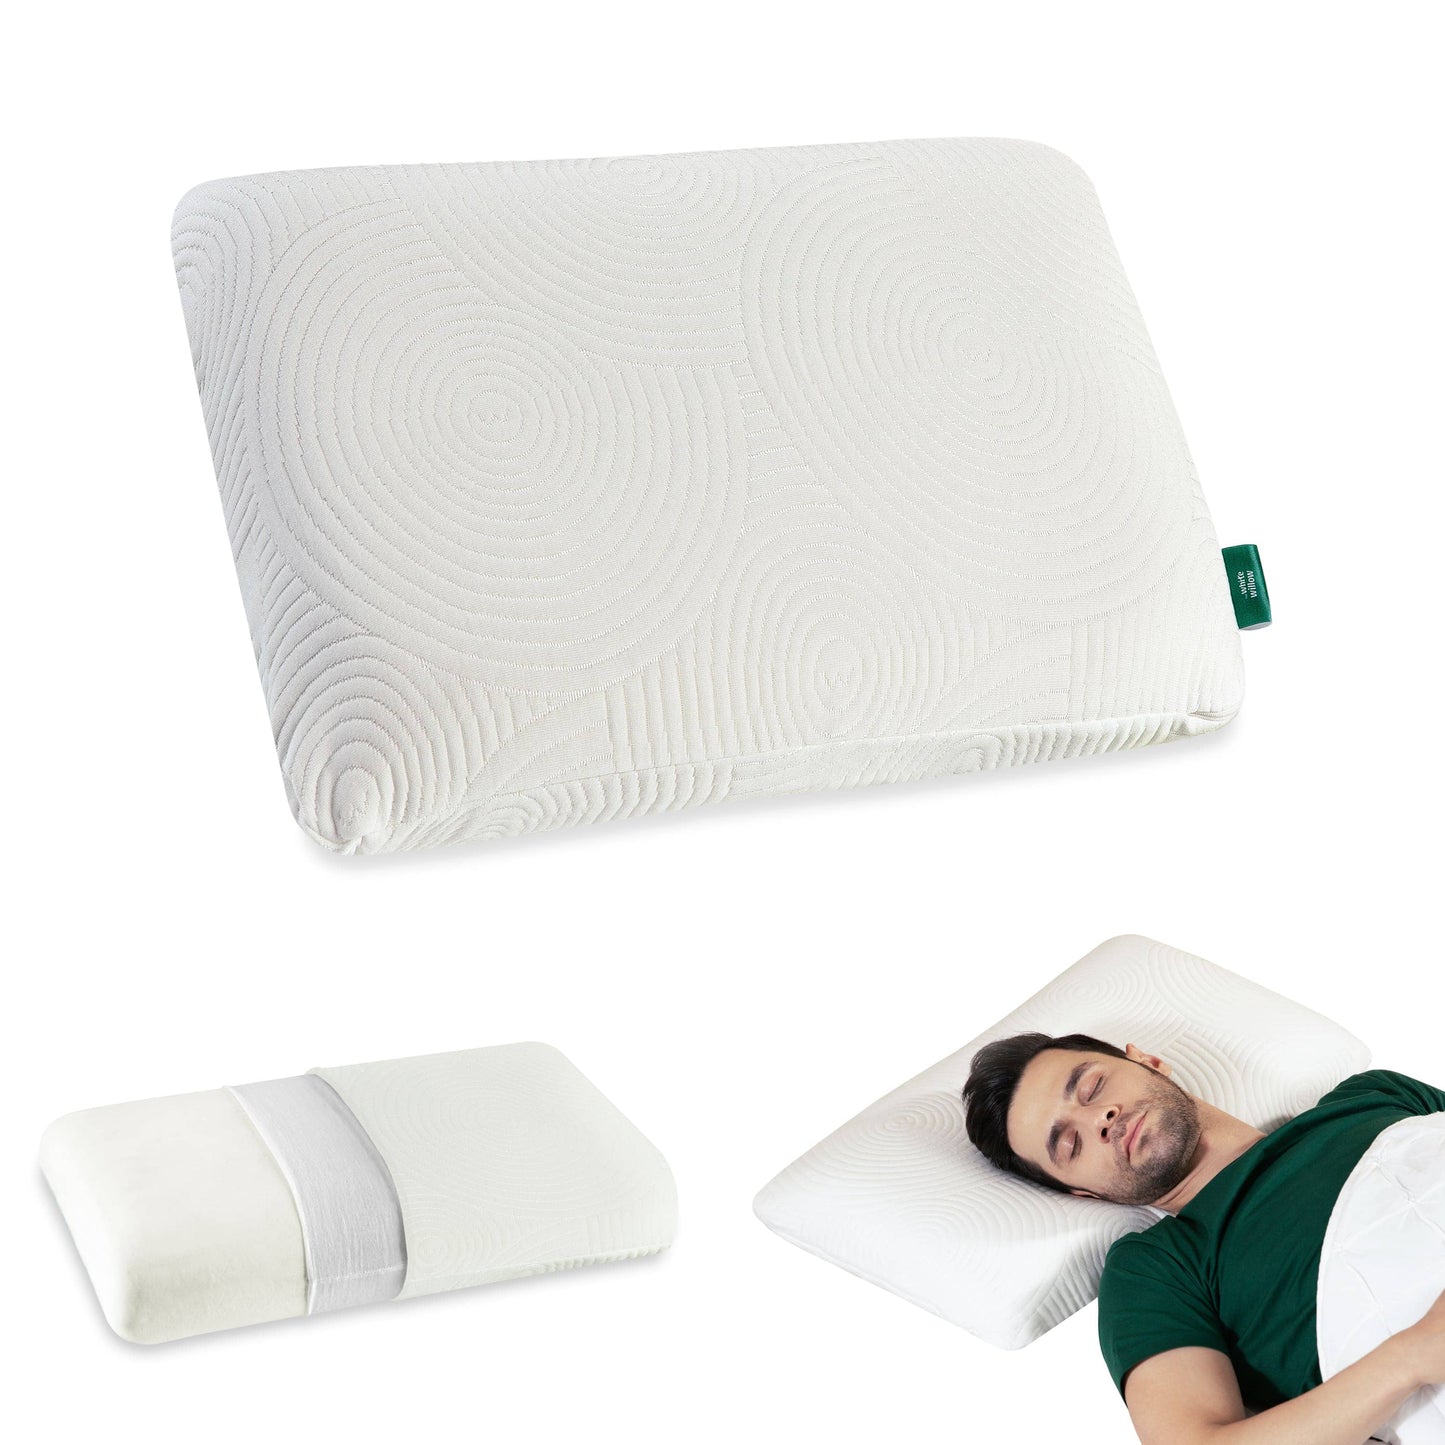 Cypress - Memory Foam Pillow - Regular - Medium Firm Regular Pillow The White Willow Medium 4"H Standard 22x14 Pack of 1 White